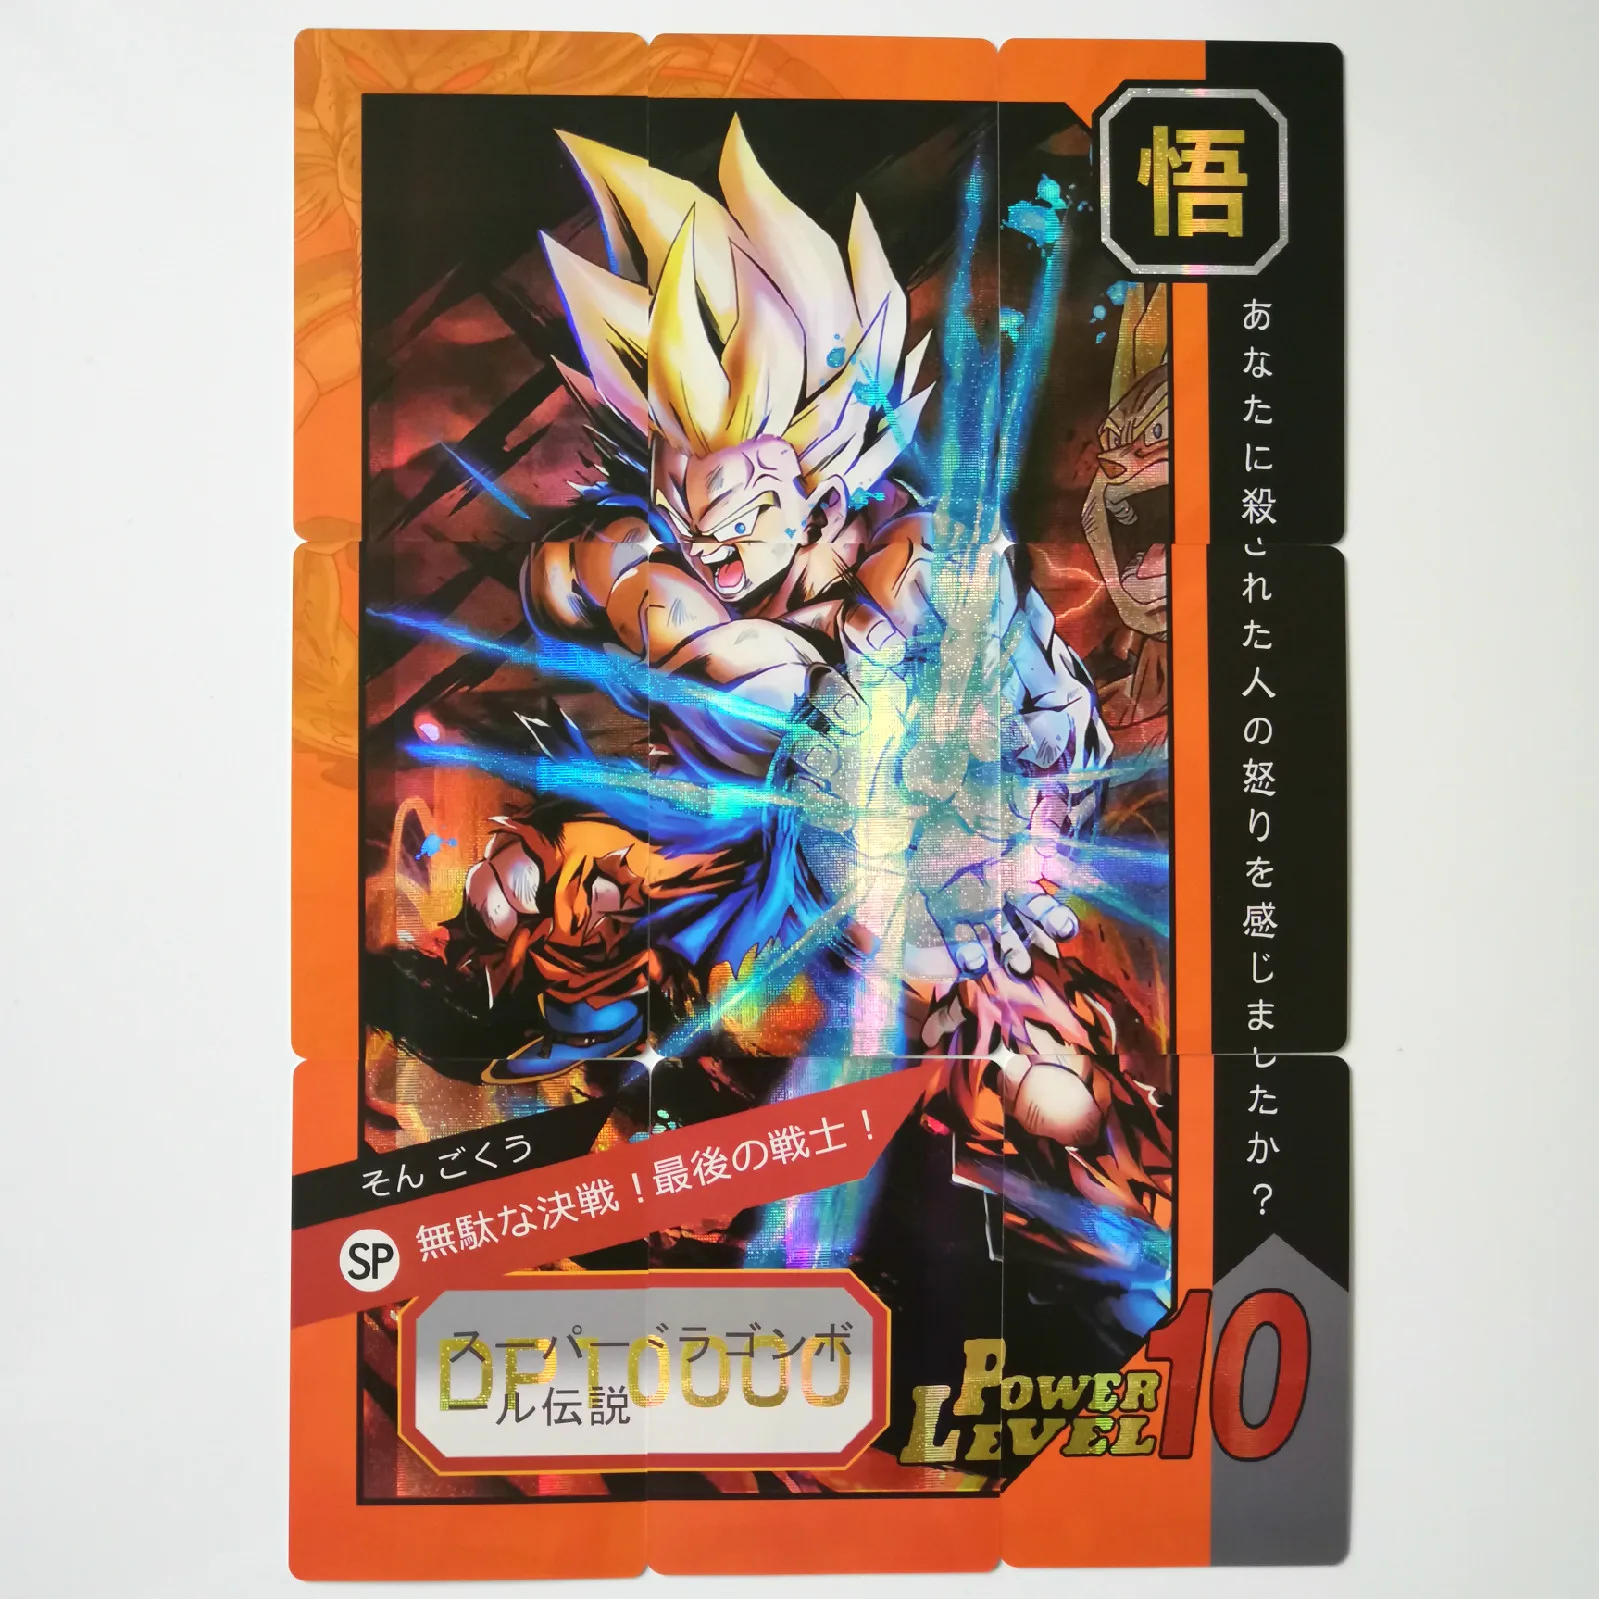 36 шт./компл. супер Dragon Ball-Z 9 в 1 герои битва карты Ultra Instinct Гоку Вегета игра Коллекция аниме-открытки